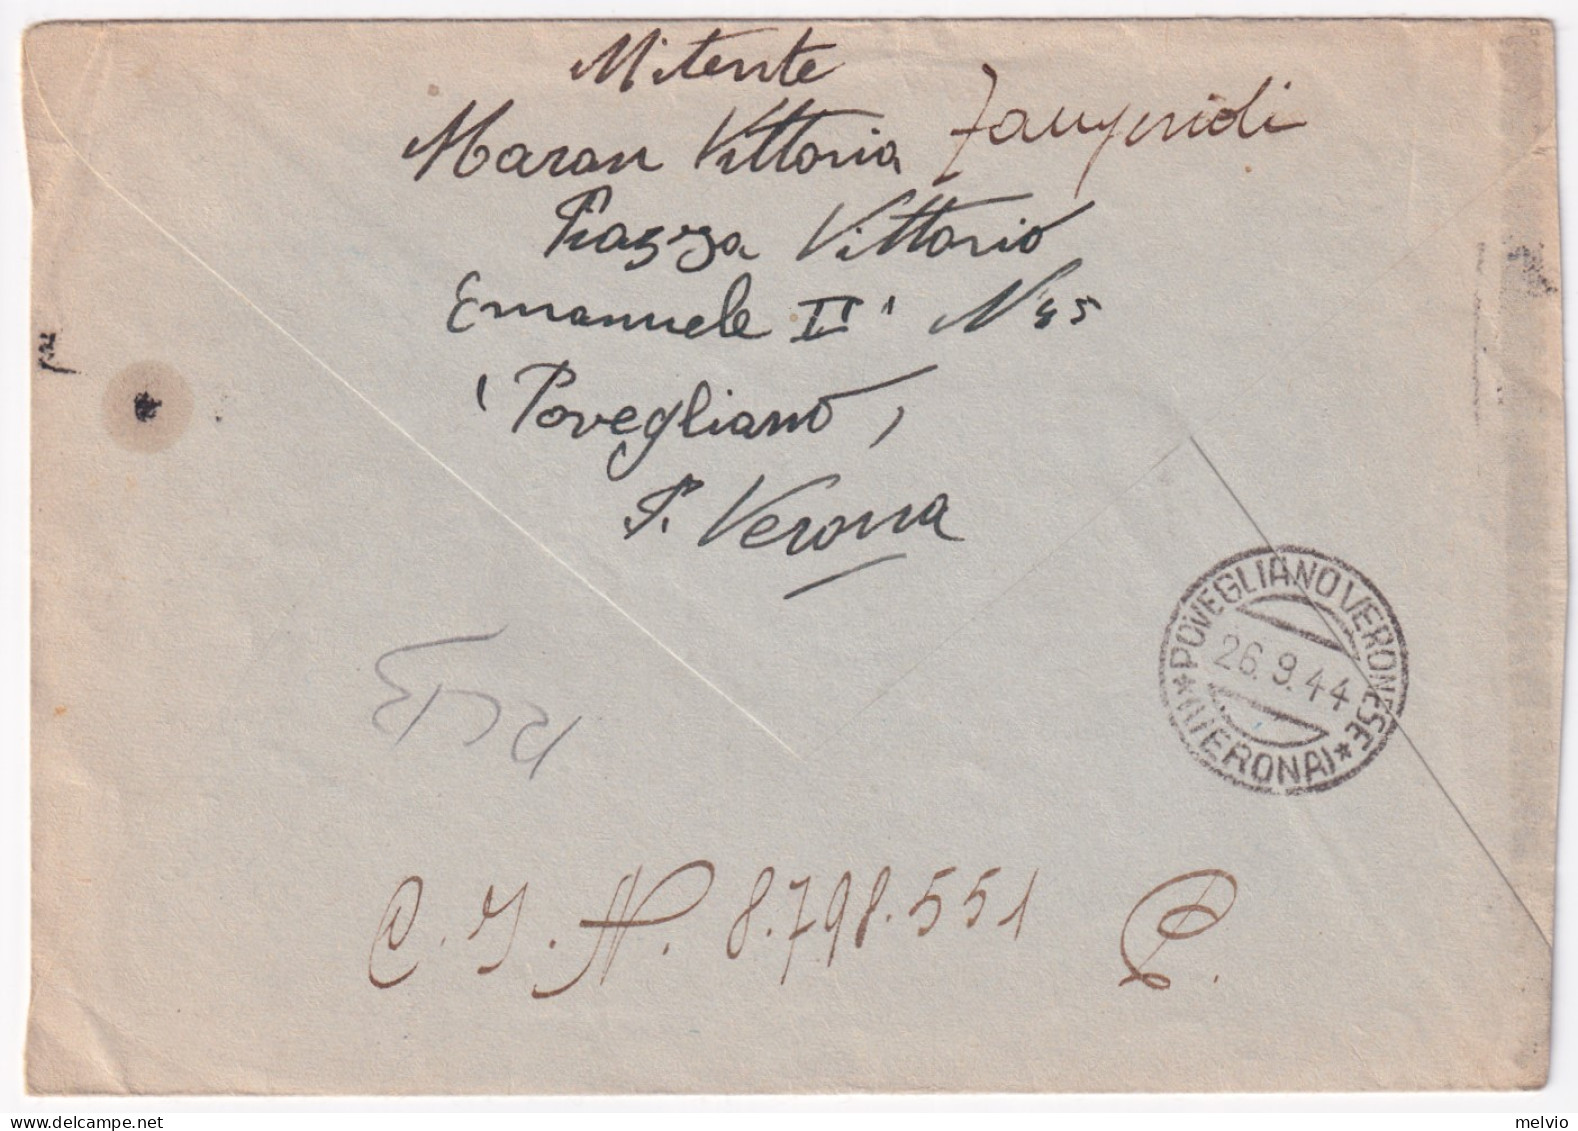 1944-Imperiale Sopr. RSI Lire 1,25 (495) Isolato Su Busta Povegliano (26.9) Per  - Marcofilía